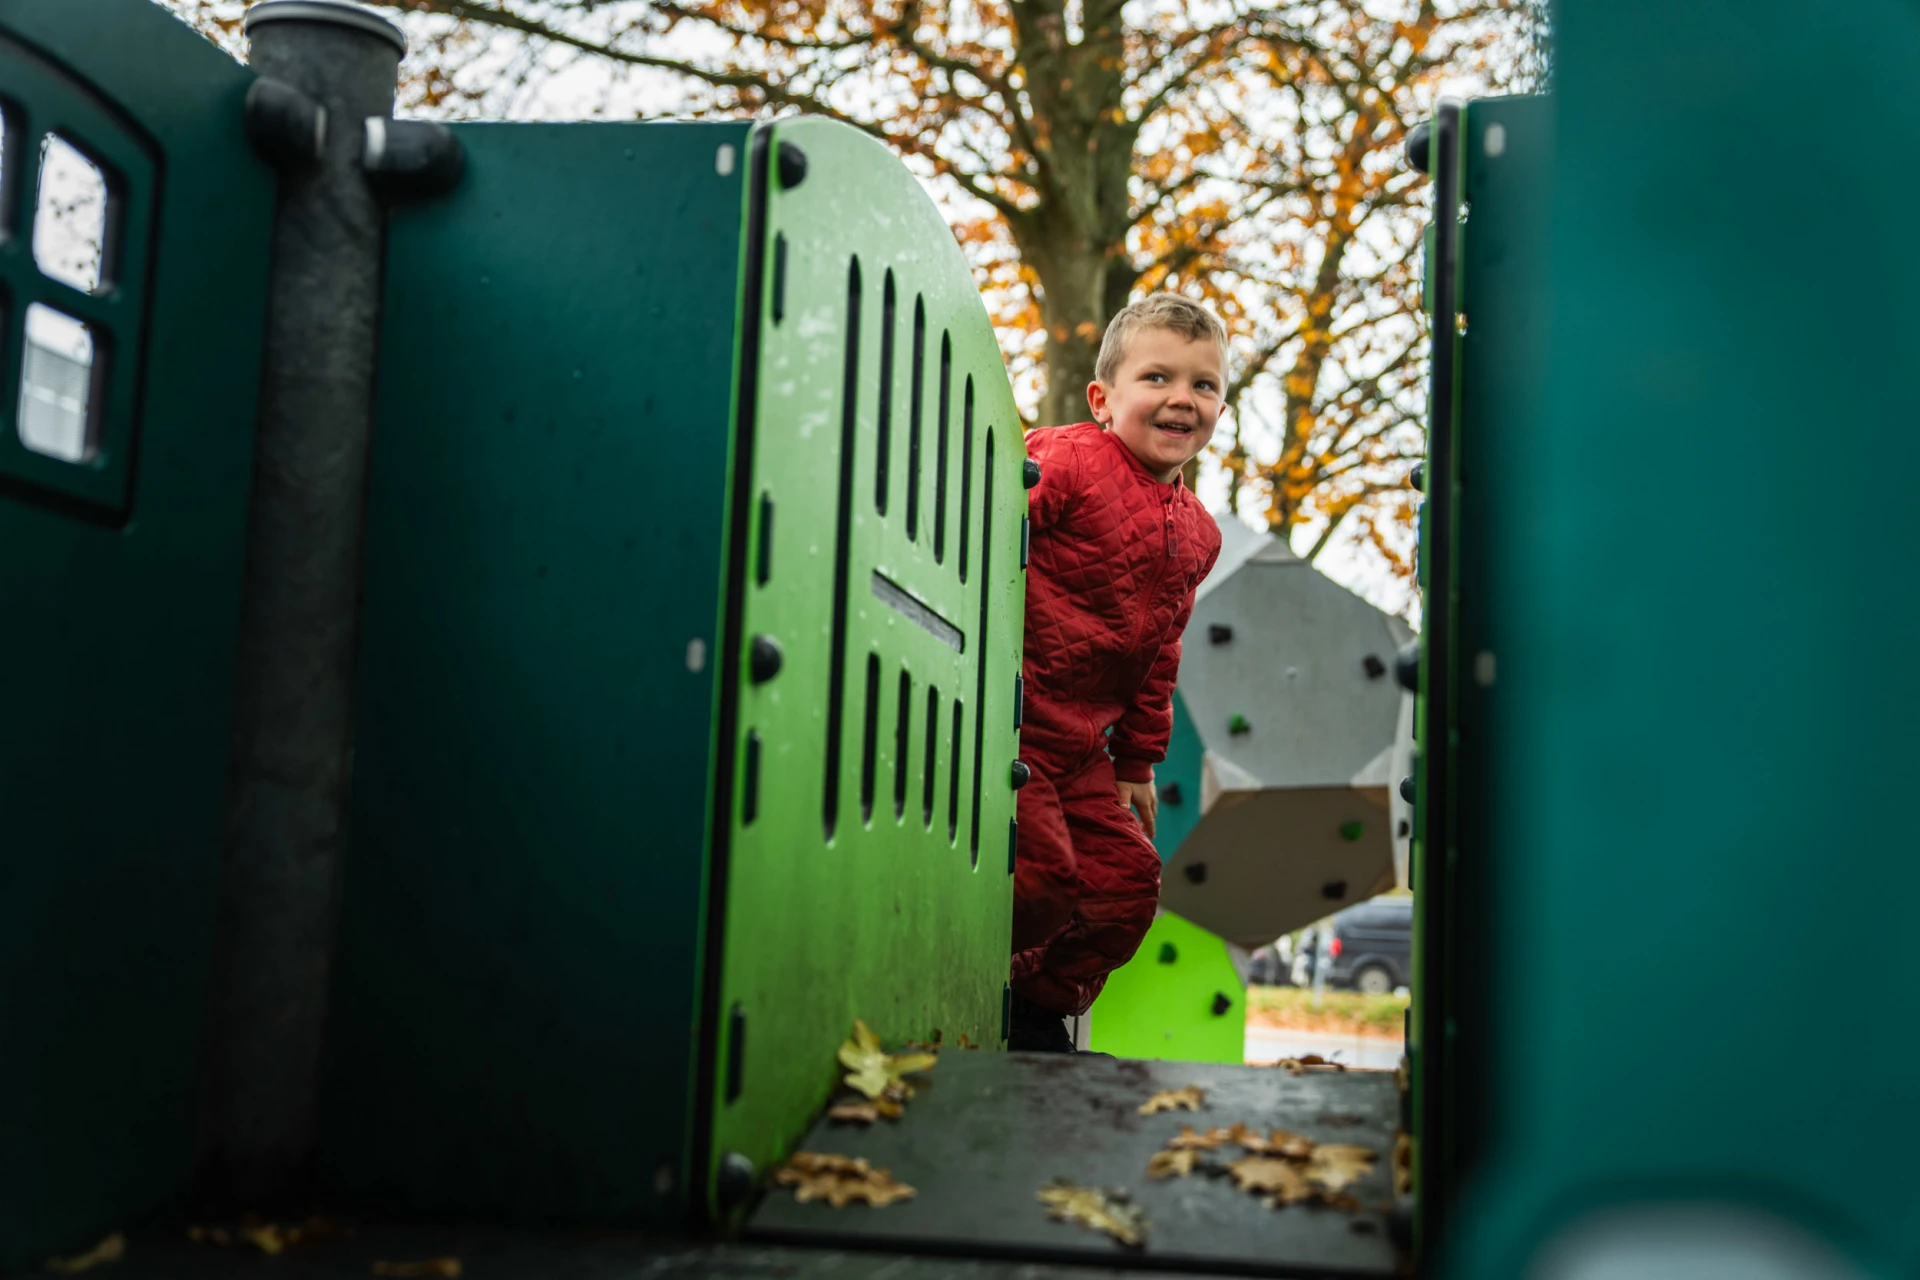 Gutt i røde klær som leker på en grønn lekeplassstruktur